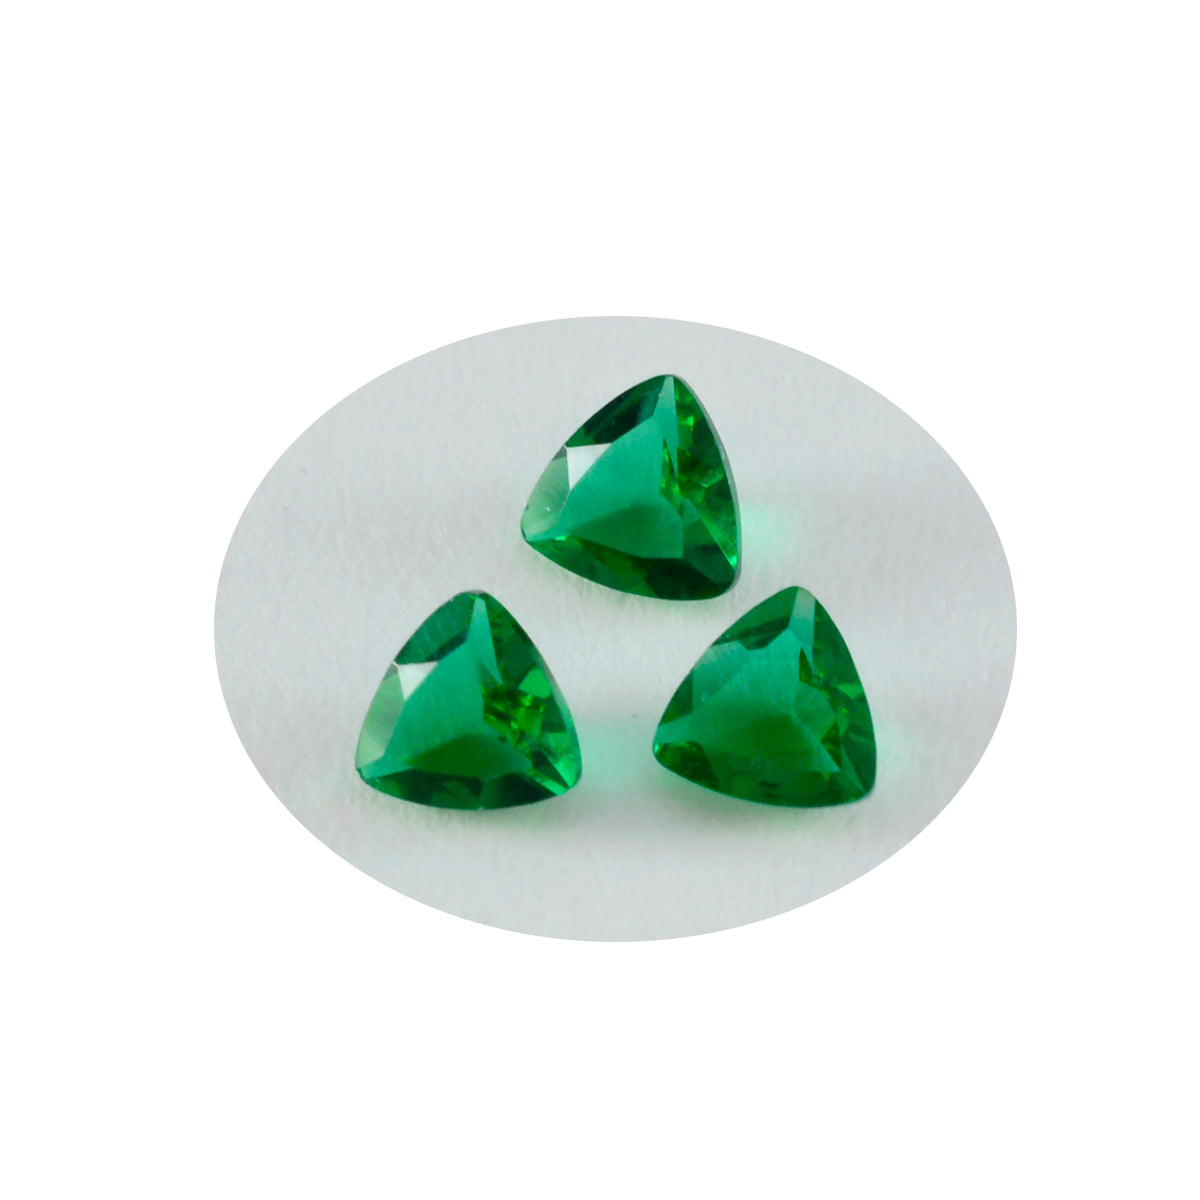 Riyogems 1PC Green Emerald CZ Faceted 10x10 mm Trillion Shape A Quality Loose Gemstone